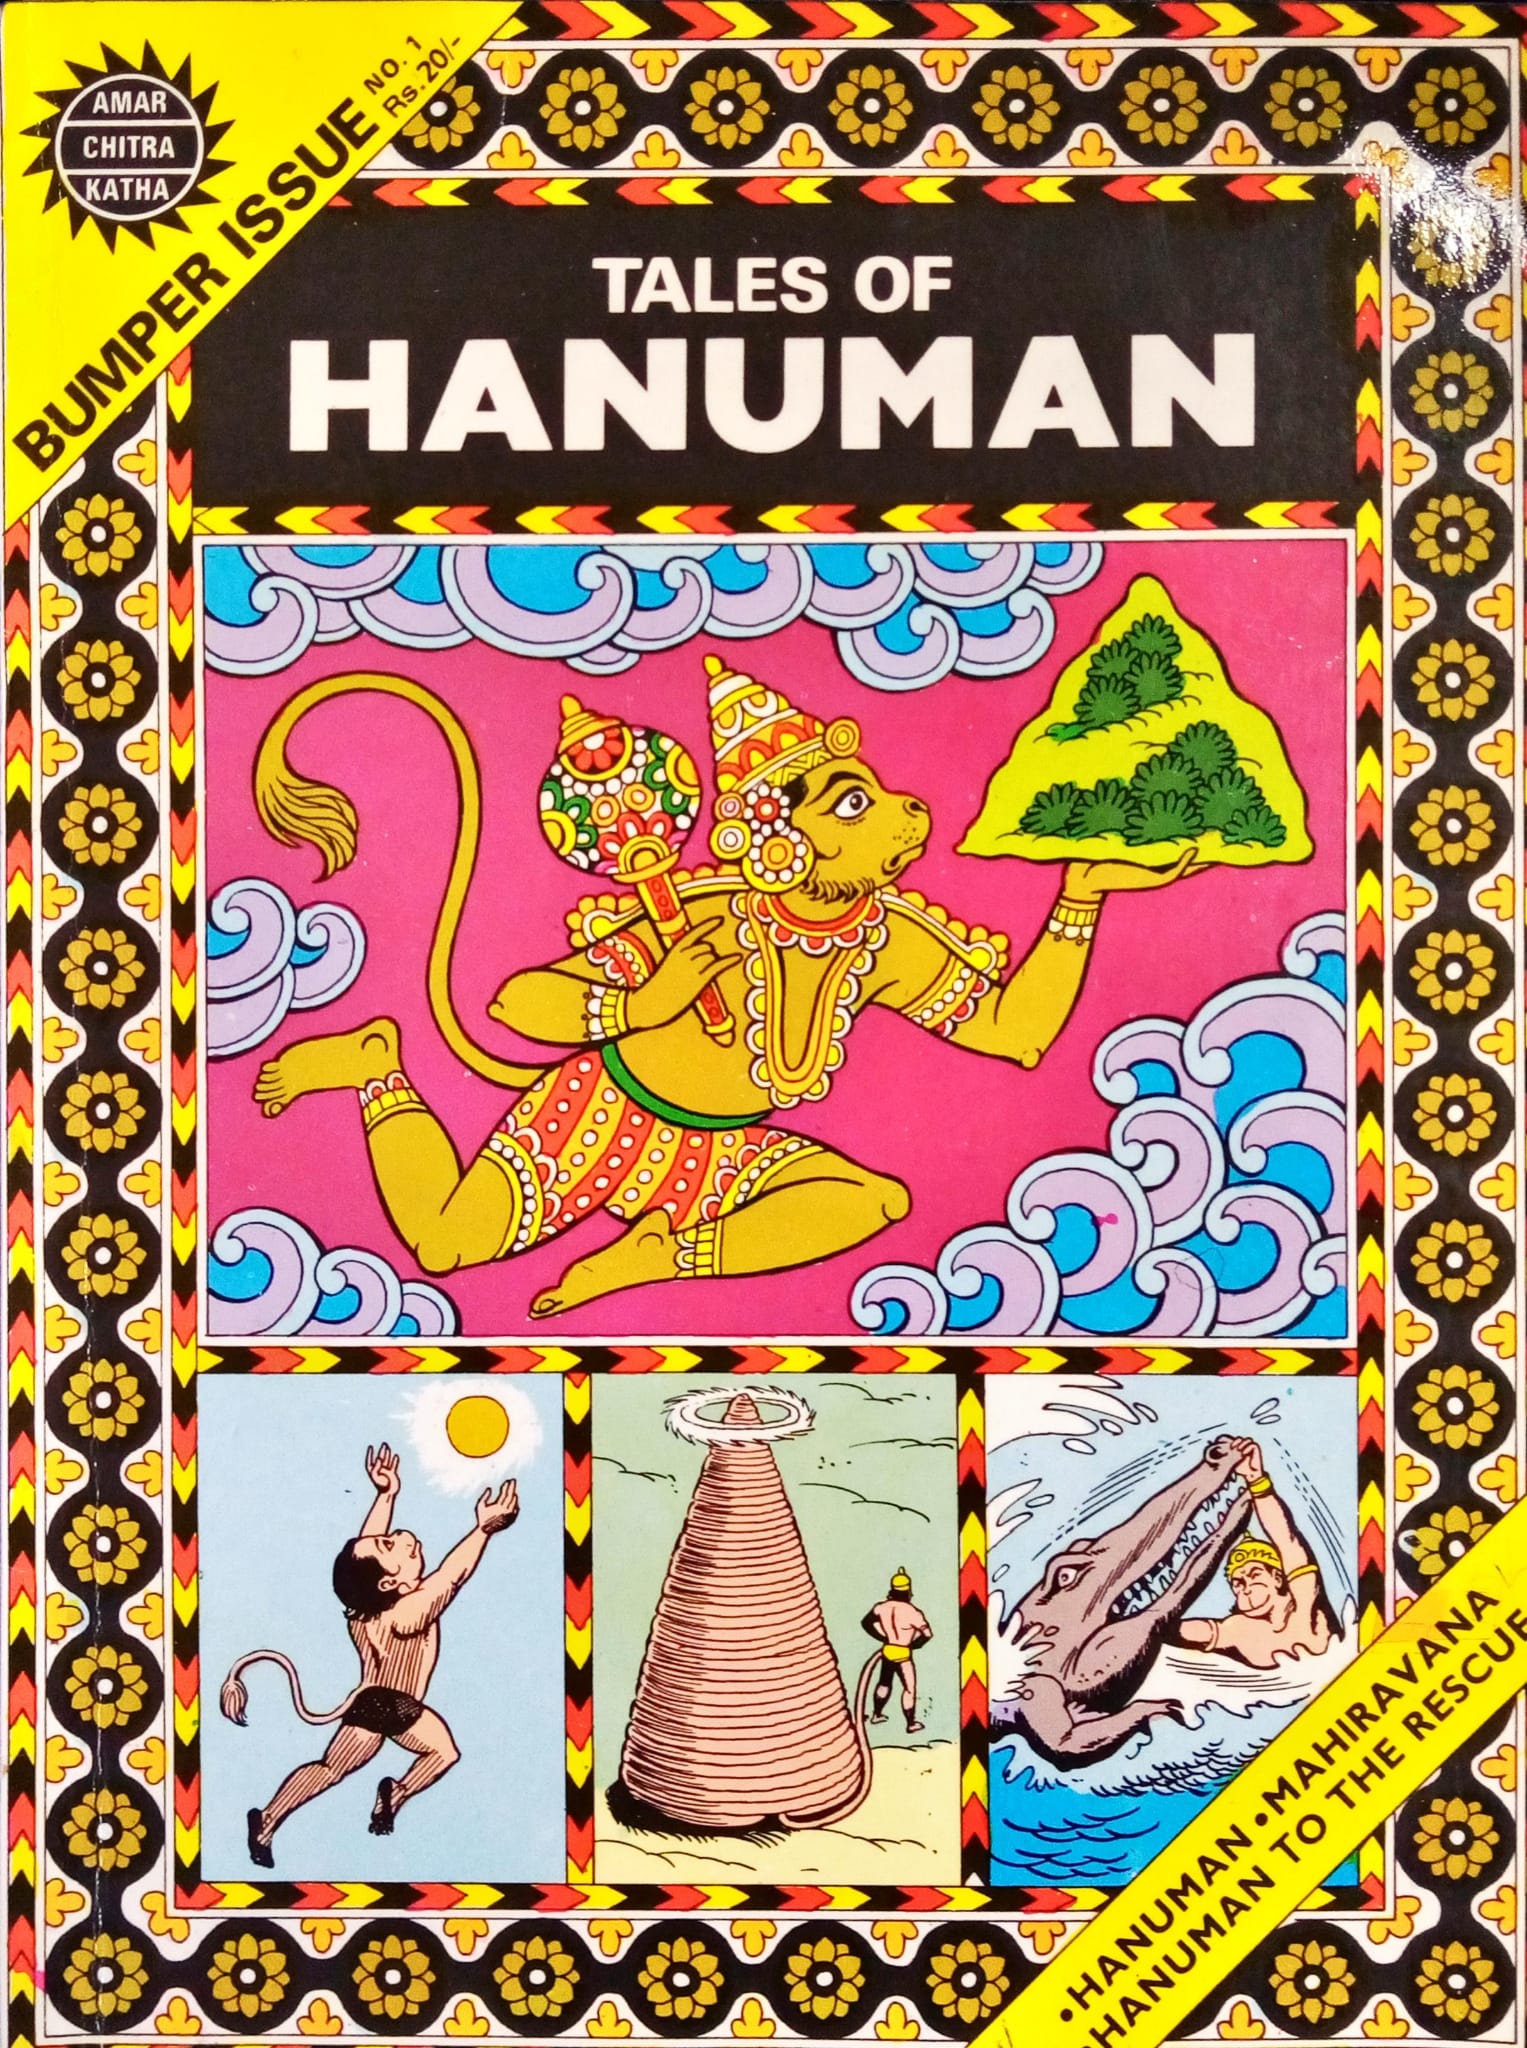 Tales of Hanuman - Bumper Issue